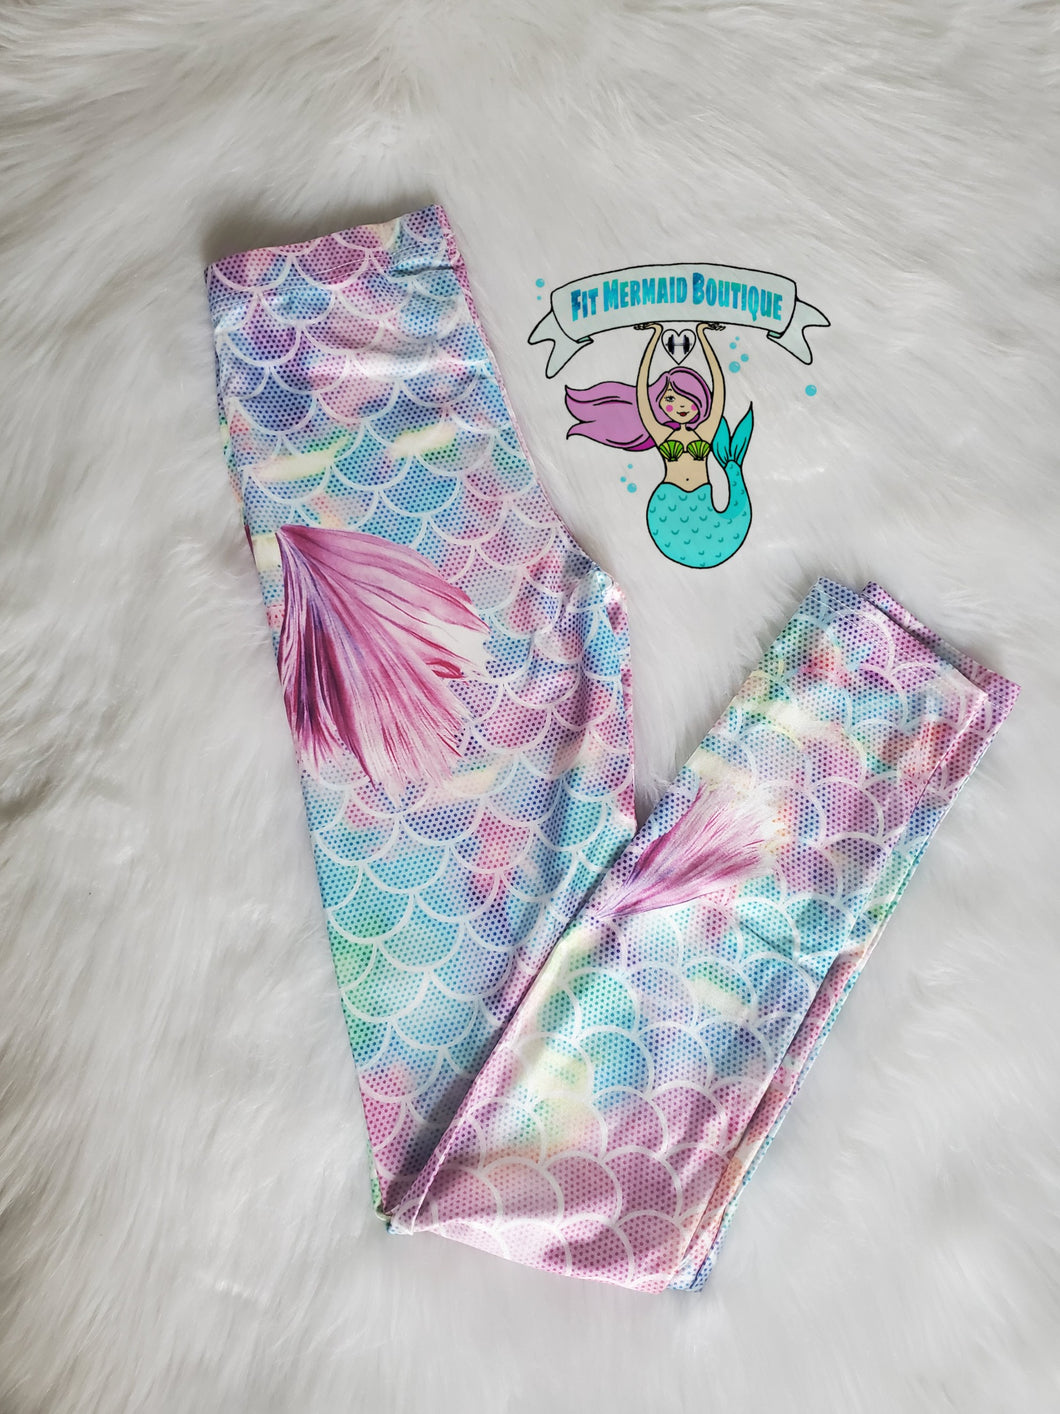 Pink Mermaid tail leggings